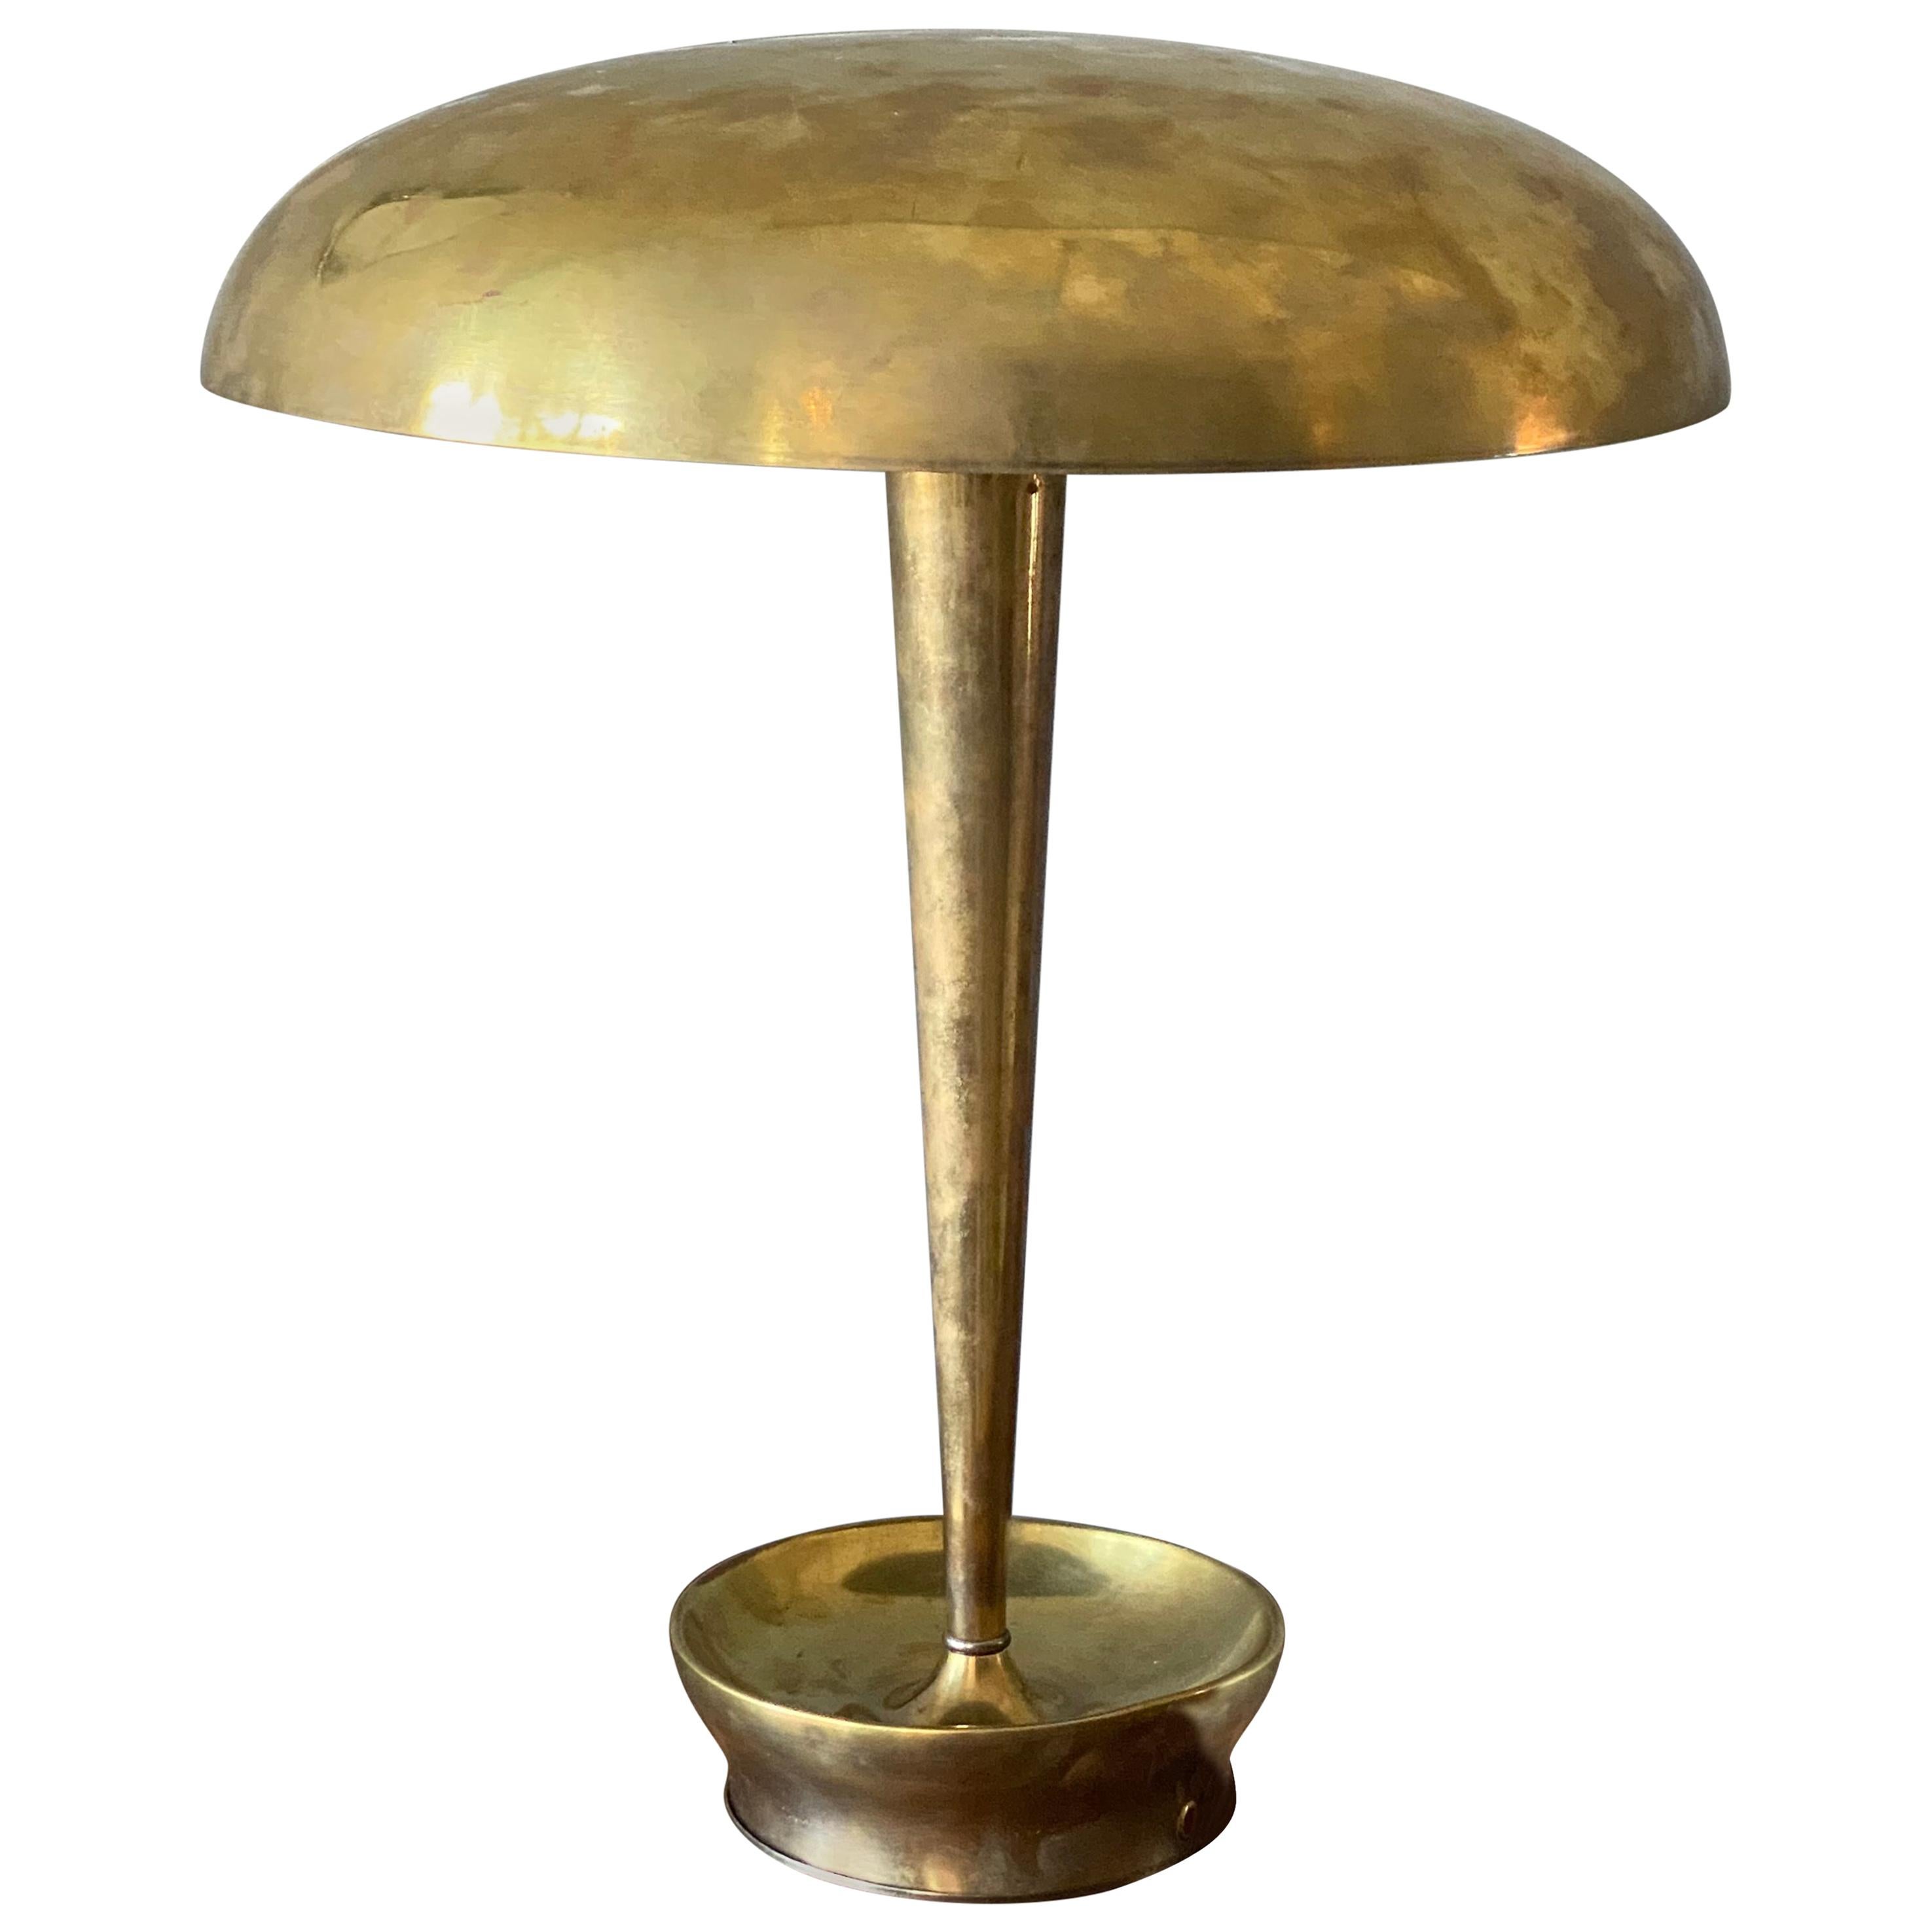 Stilnovo, Desk Lamp, Model "D 4639" Brass, Glass, 1950s, Italy